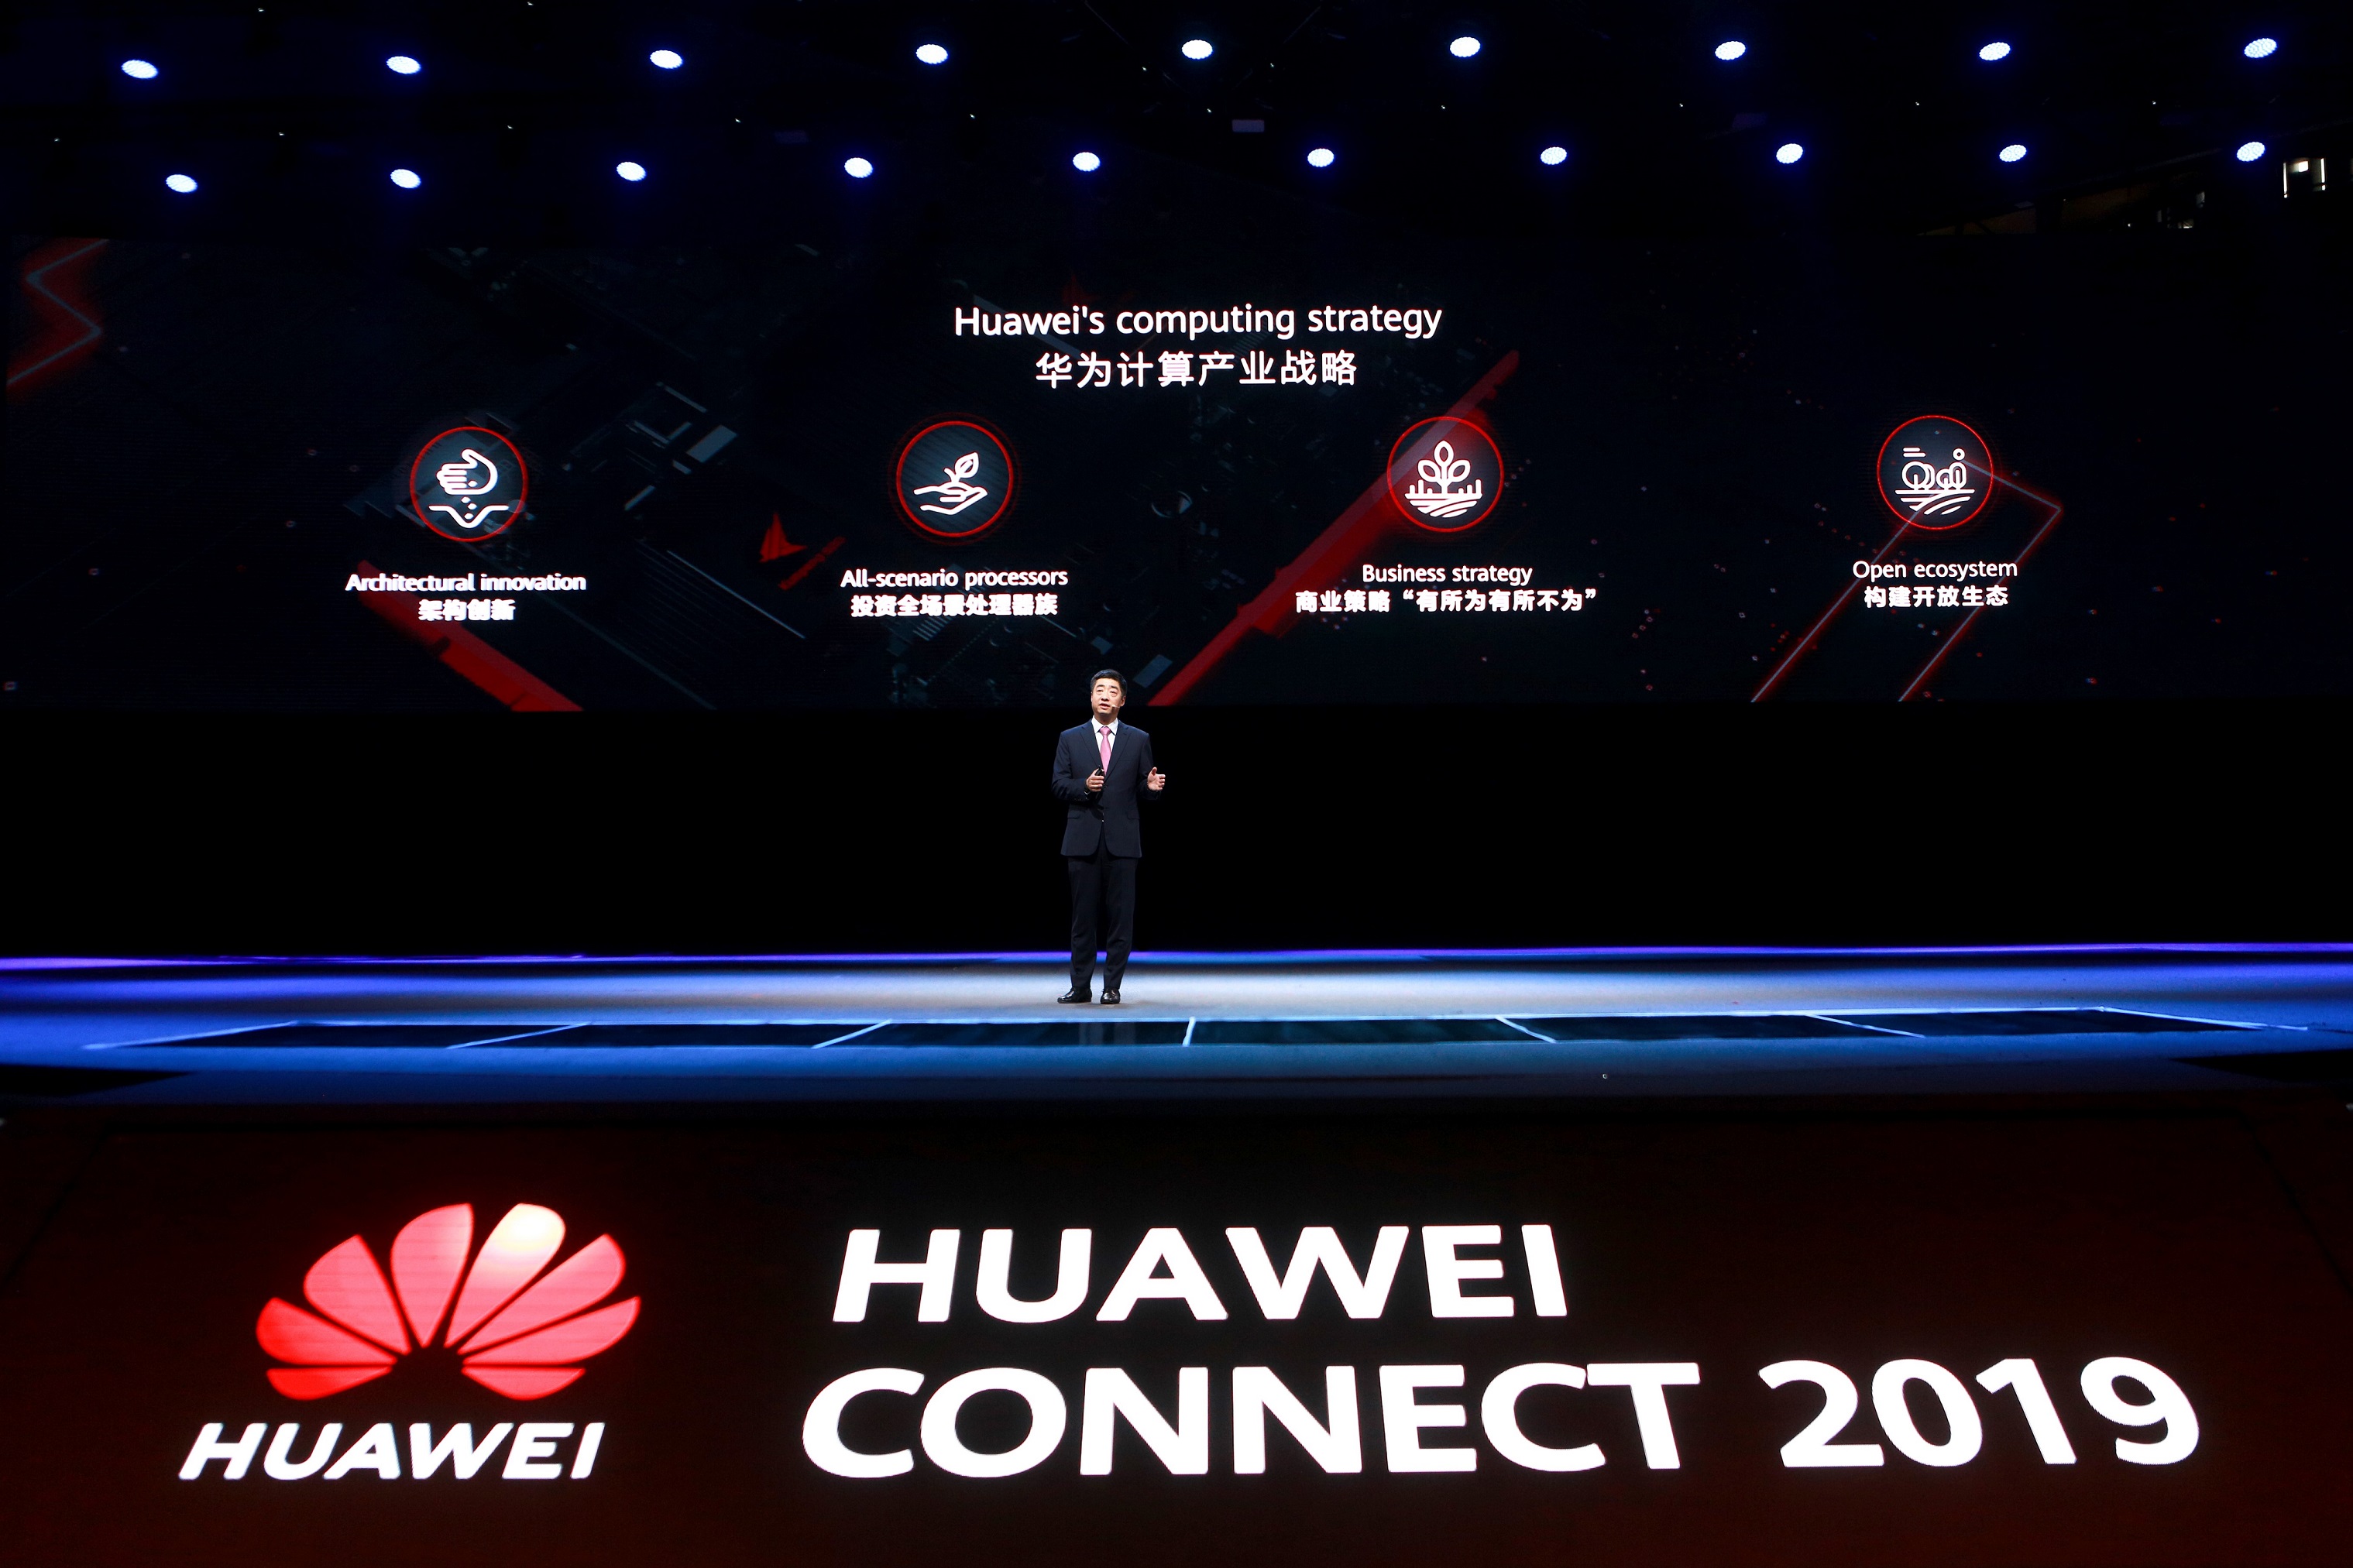 La conférence « Huawei Connect 2019 » à Shanghai.